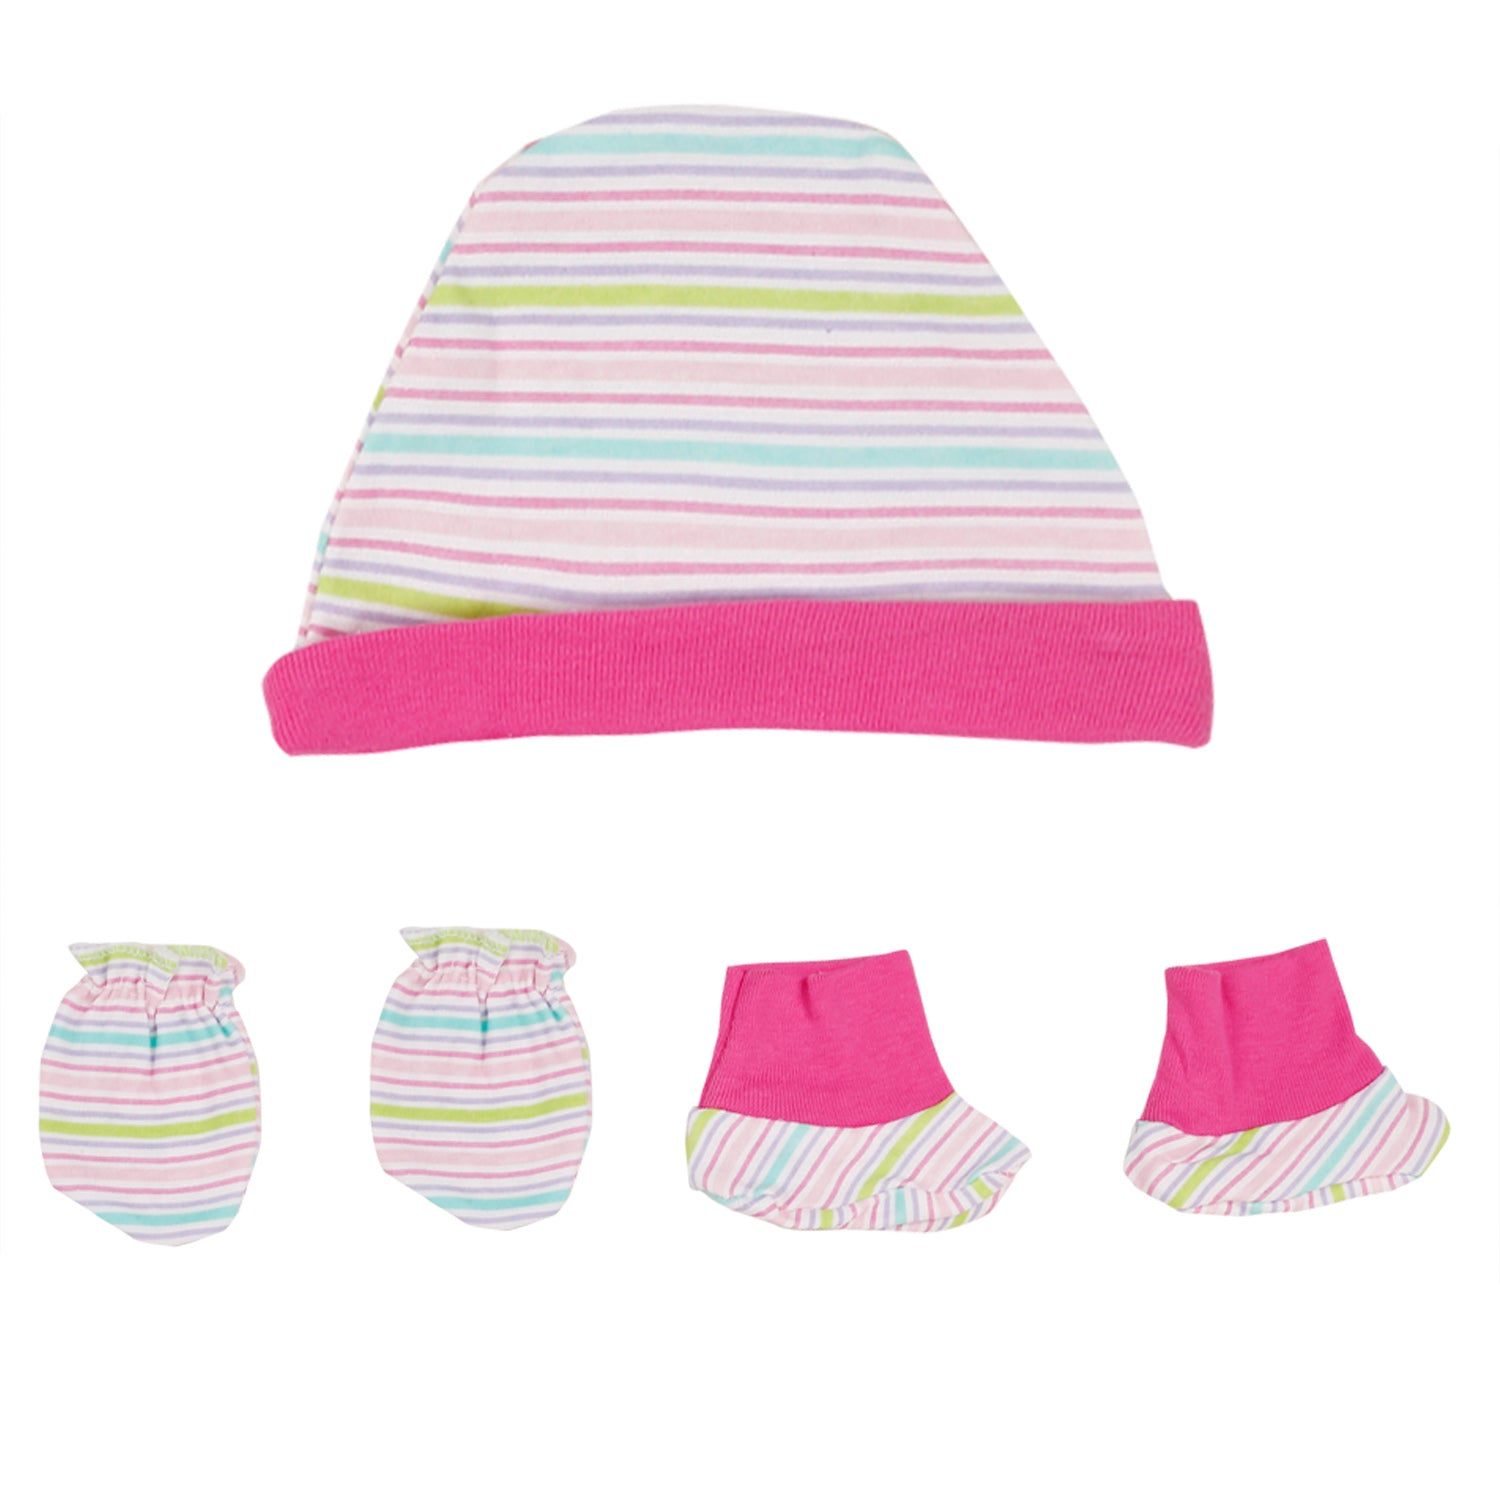 Baby Moo Way Too Cute Pink 5 Pcs Gift Set - Baby Moo